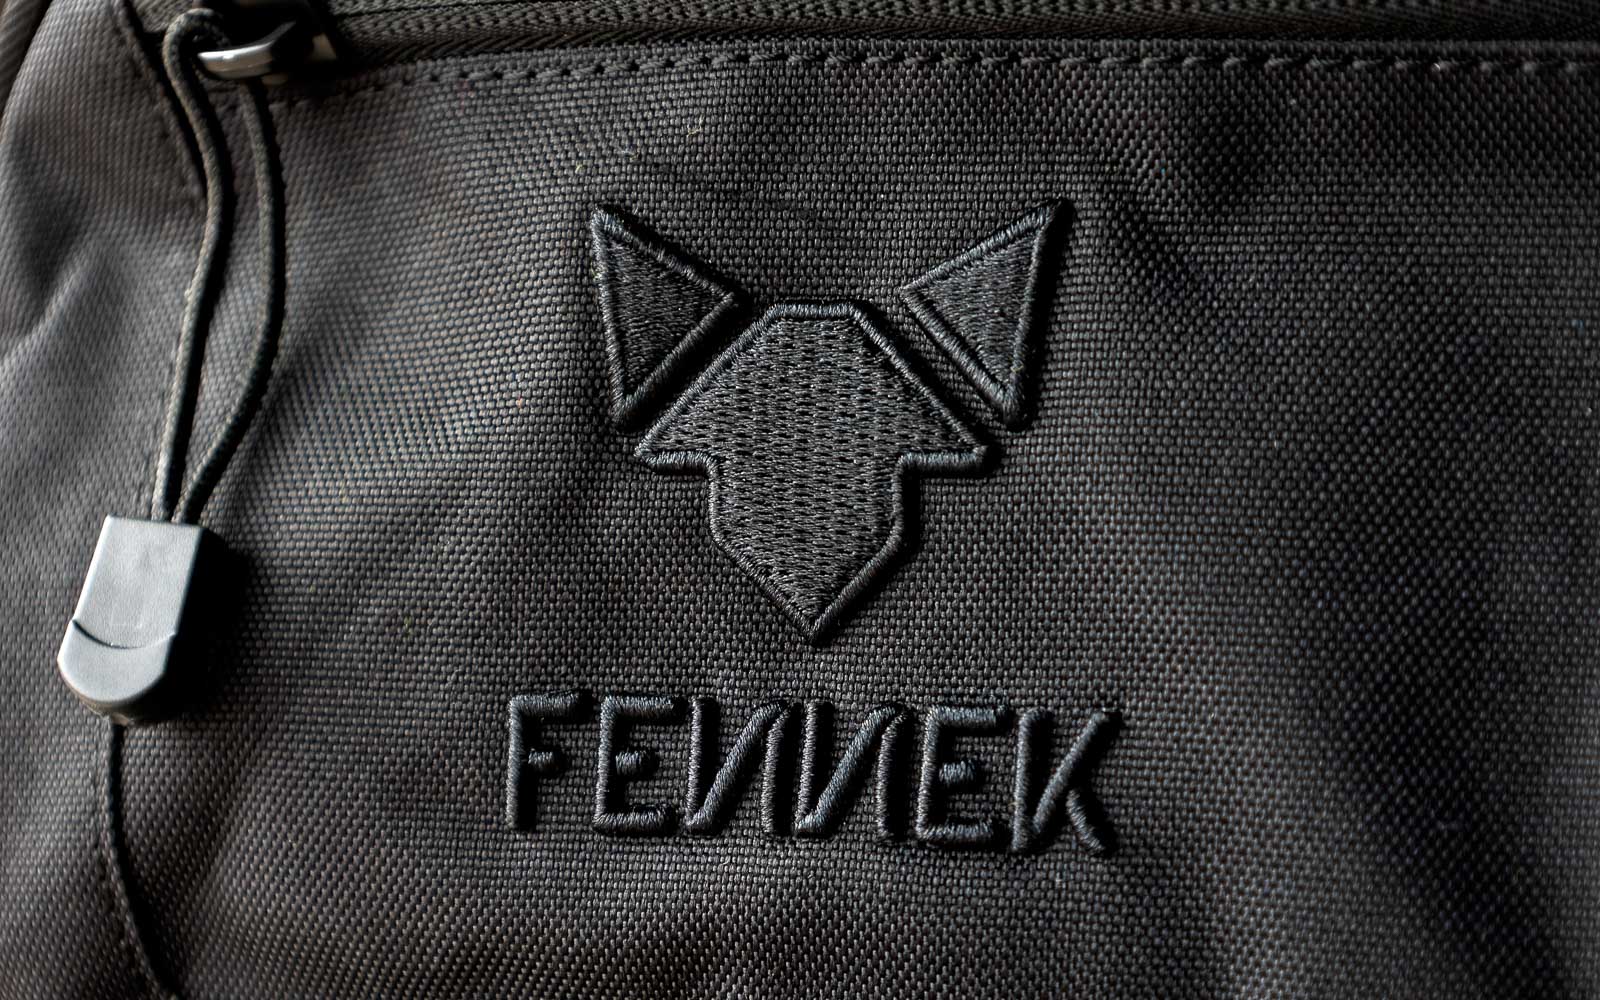 Nahe Sicht auf das hochwertig gestickte Logo FENNEK beim Backpack One2explore.